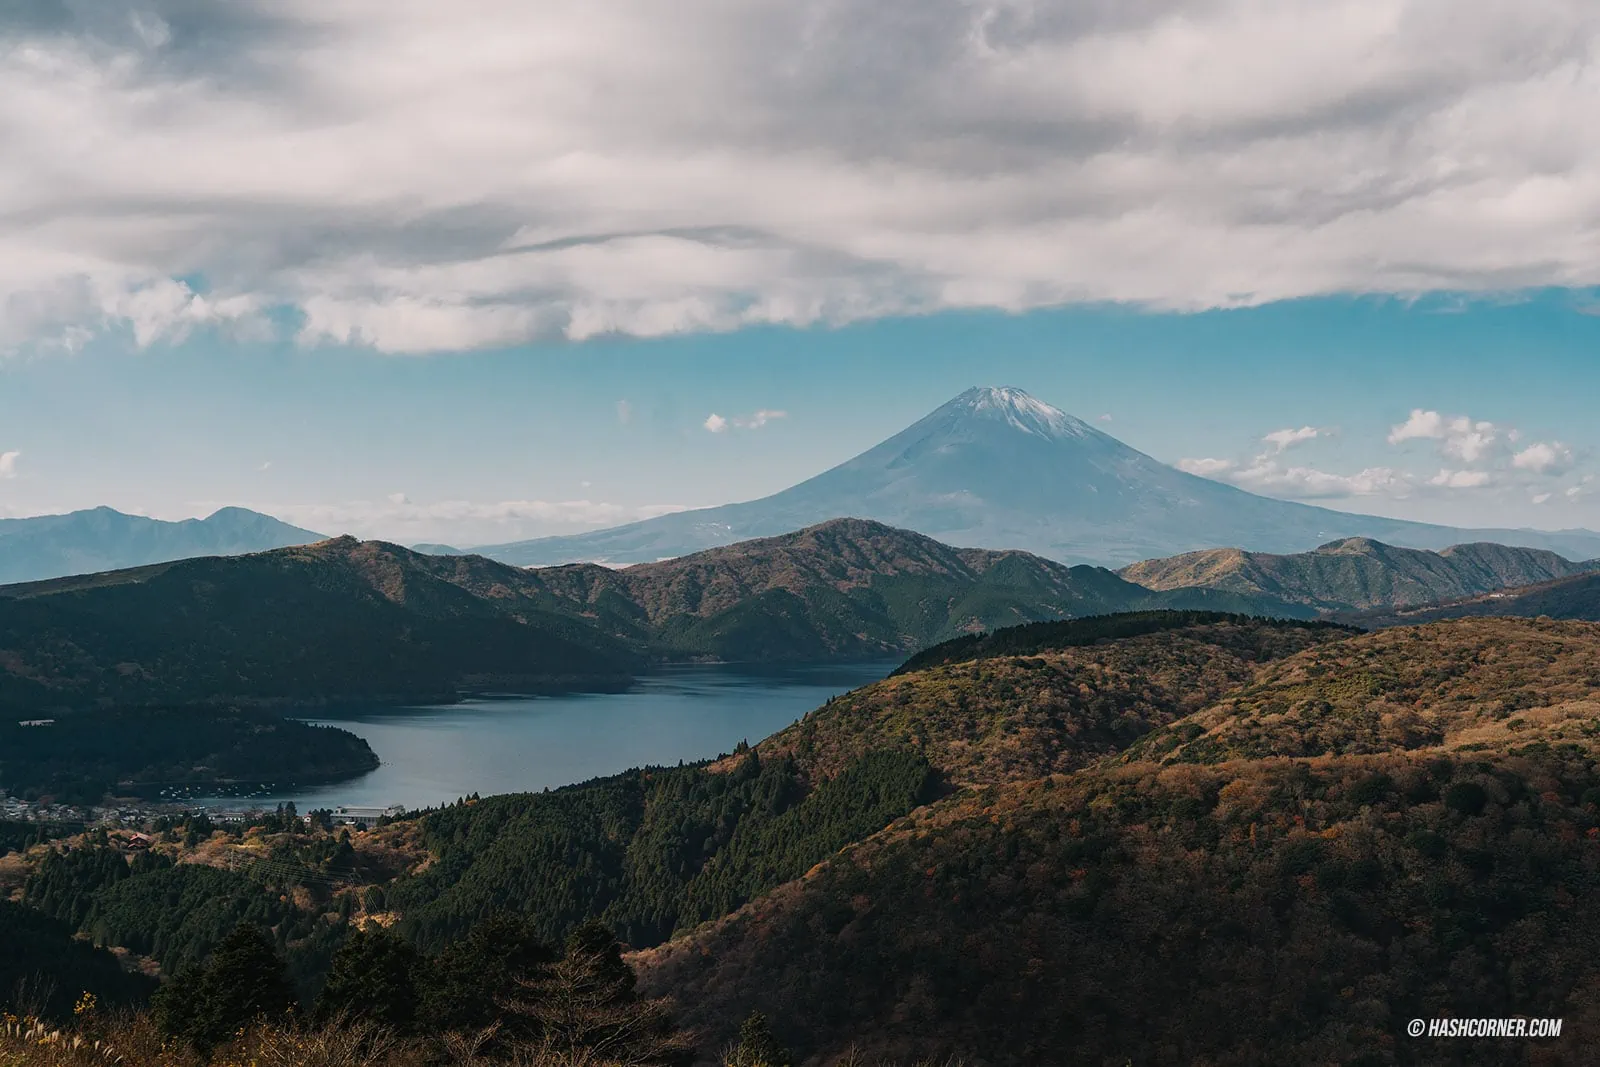 รีวิว ฮาโกเน่ (Hakone) x ญี่ปุ่น เที่ยวเมืองภูเขาไฟทะเลสาบ